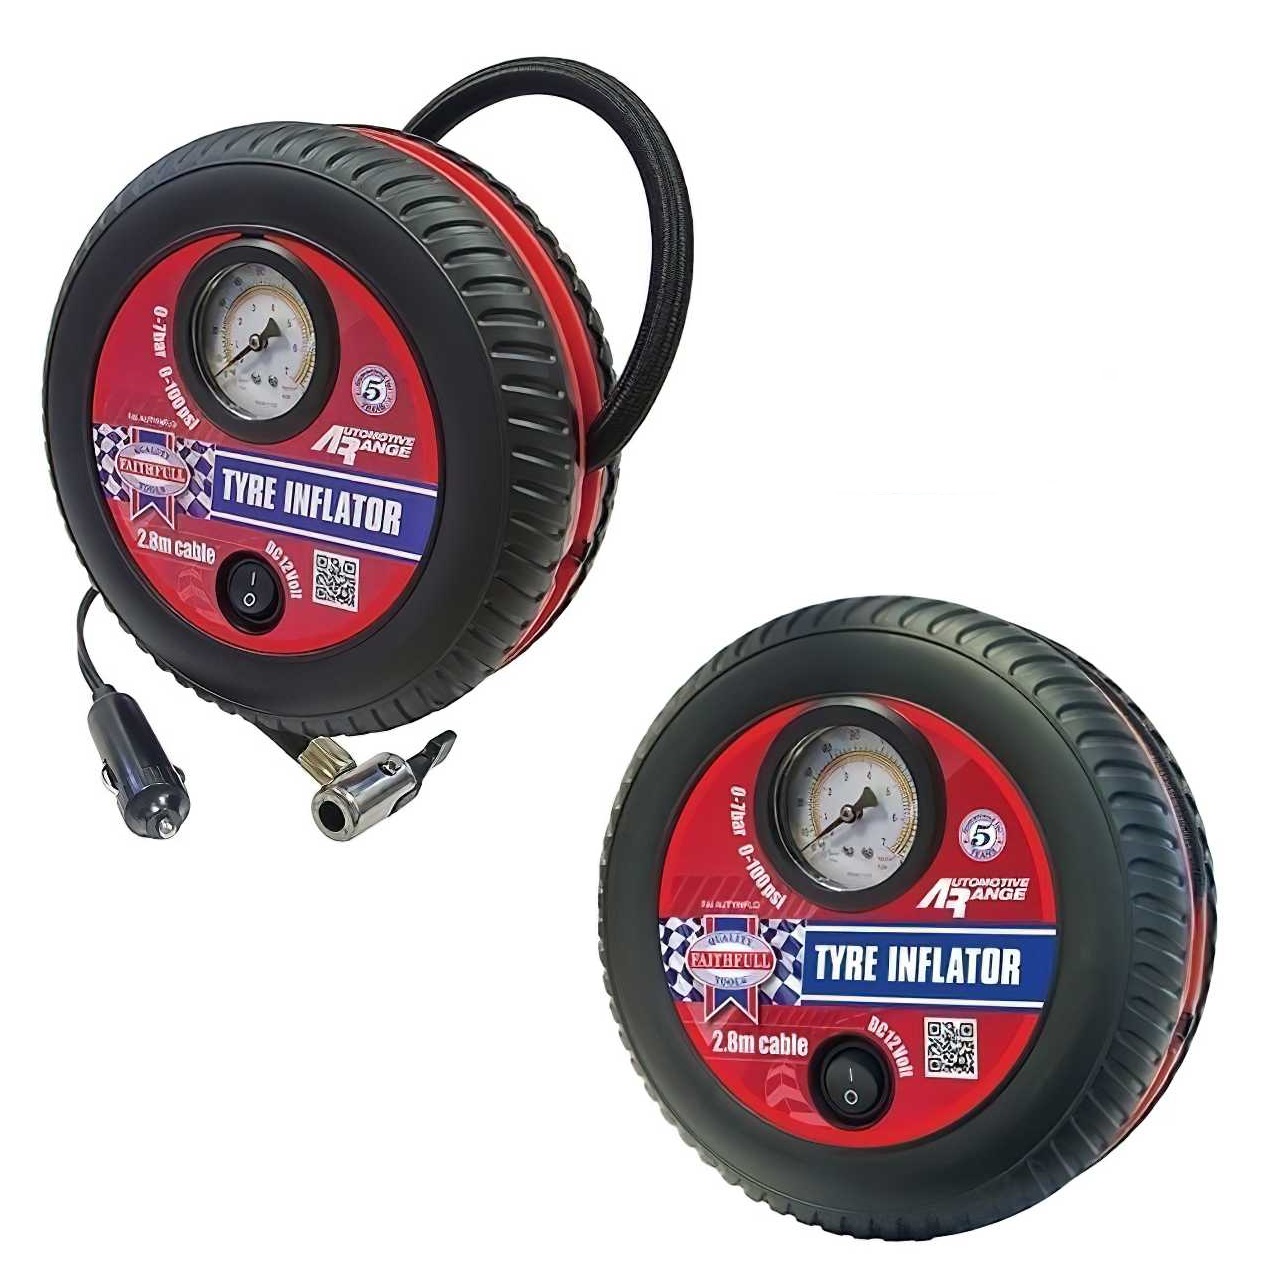 https://www.sealantsandtoolsdirect.co.uk/image/catalog/manufacturer-new/faithfull/automotive/tyre-inflator/faithfull-12-volt-car-tyre-inflator-faiautyinflo-tlg015-cy102.jpg